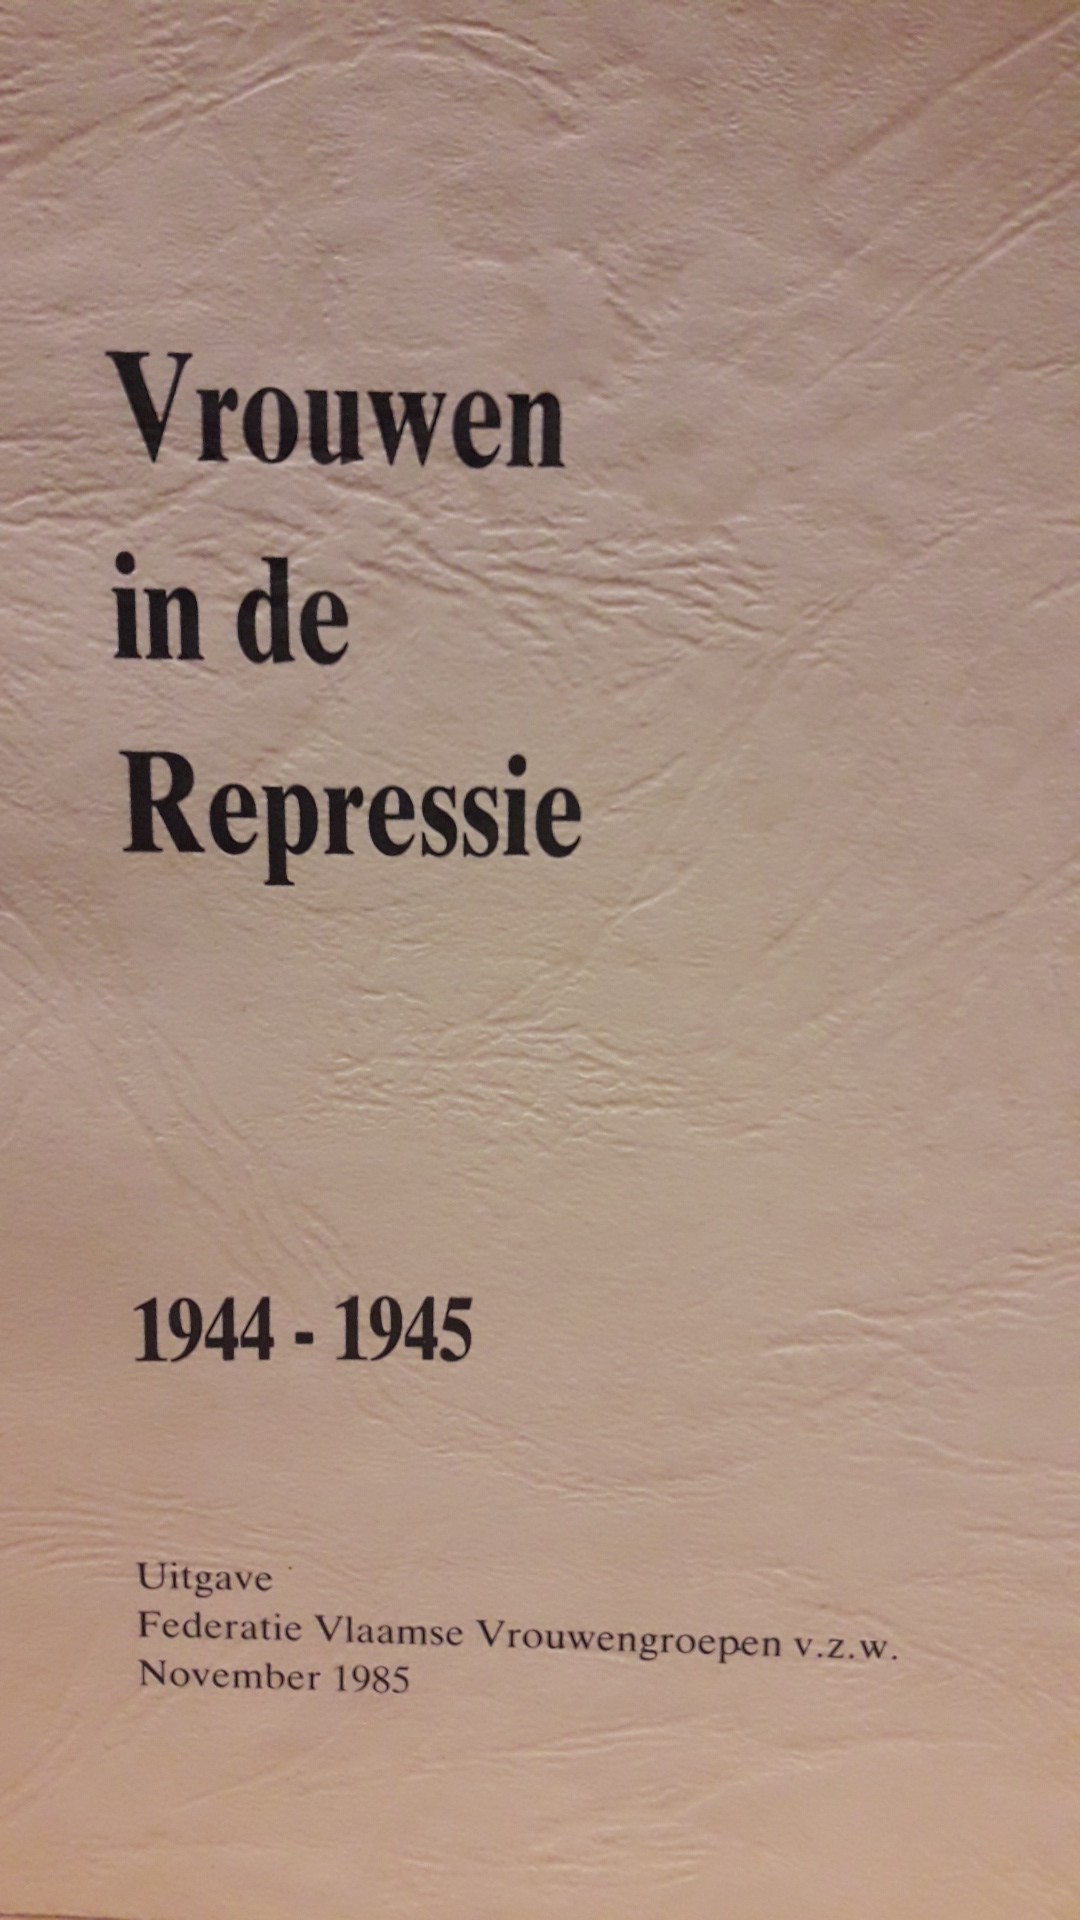 Vrouwen in de repressie 1944 - 1945 / brochure 1985 - 76 blz